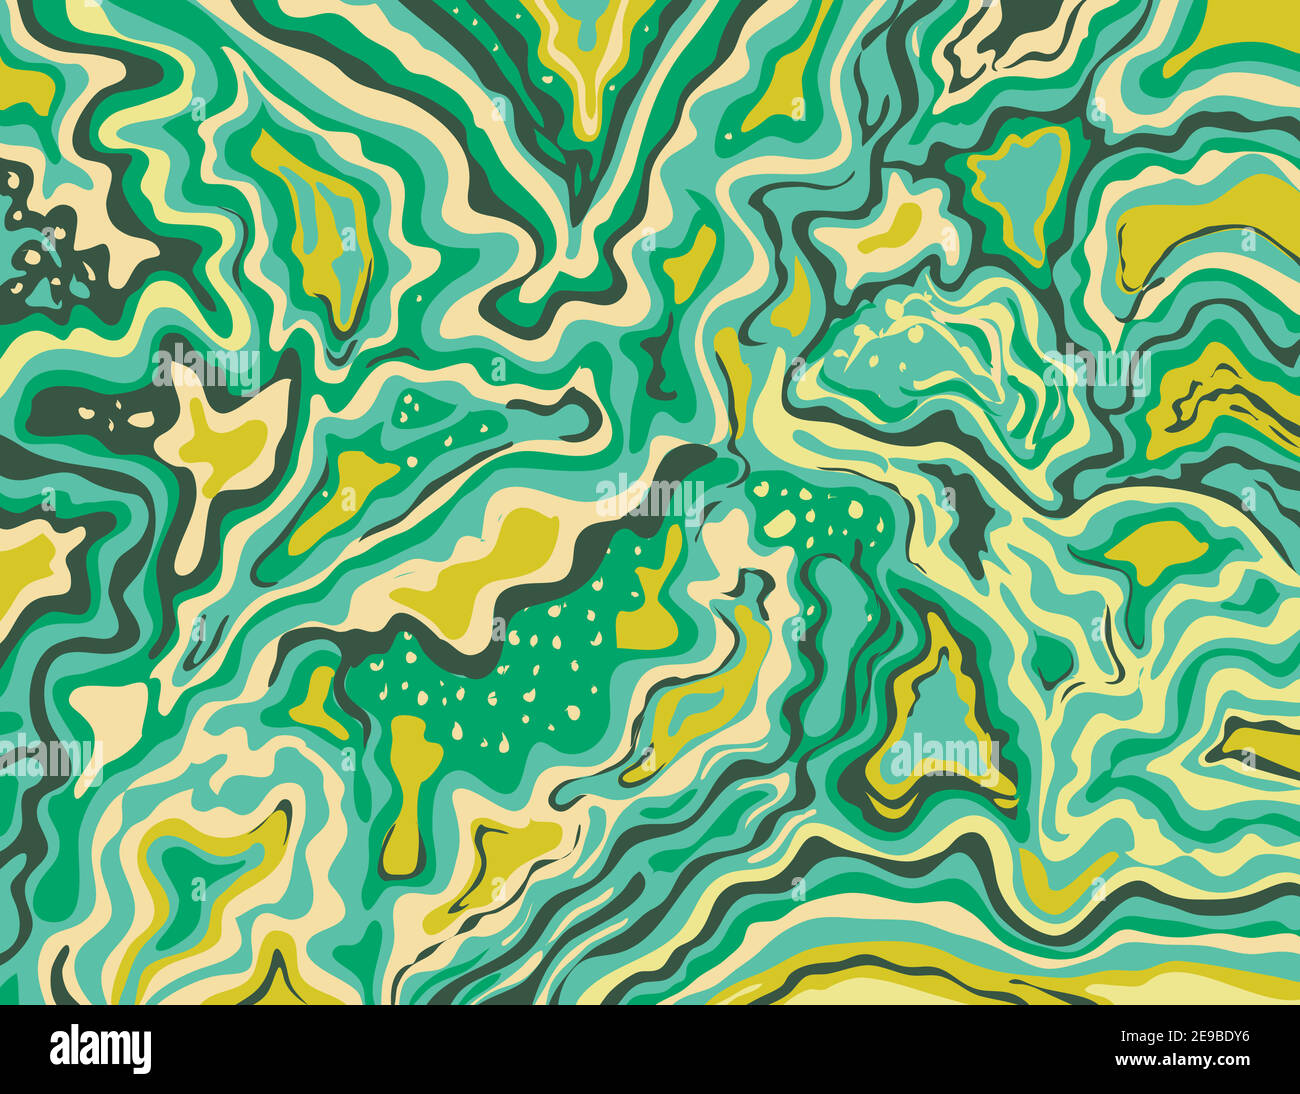 Digitale Marmorierung oder inkscape Illustration eines abstrakten wirbelnden, psychedelischen, flüssigen Marmors und simulierter Marmorierung im Stil von Suminagashi Kintsu Stock Vektor